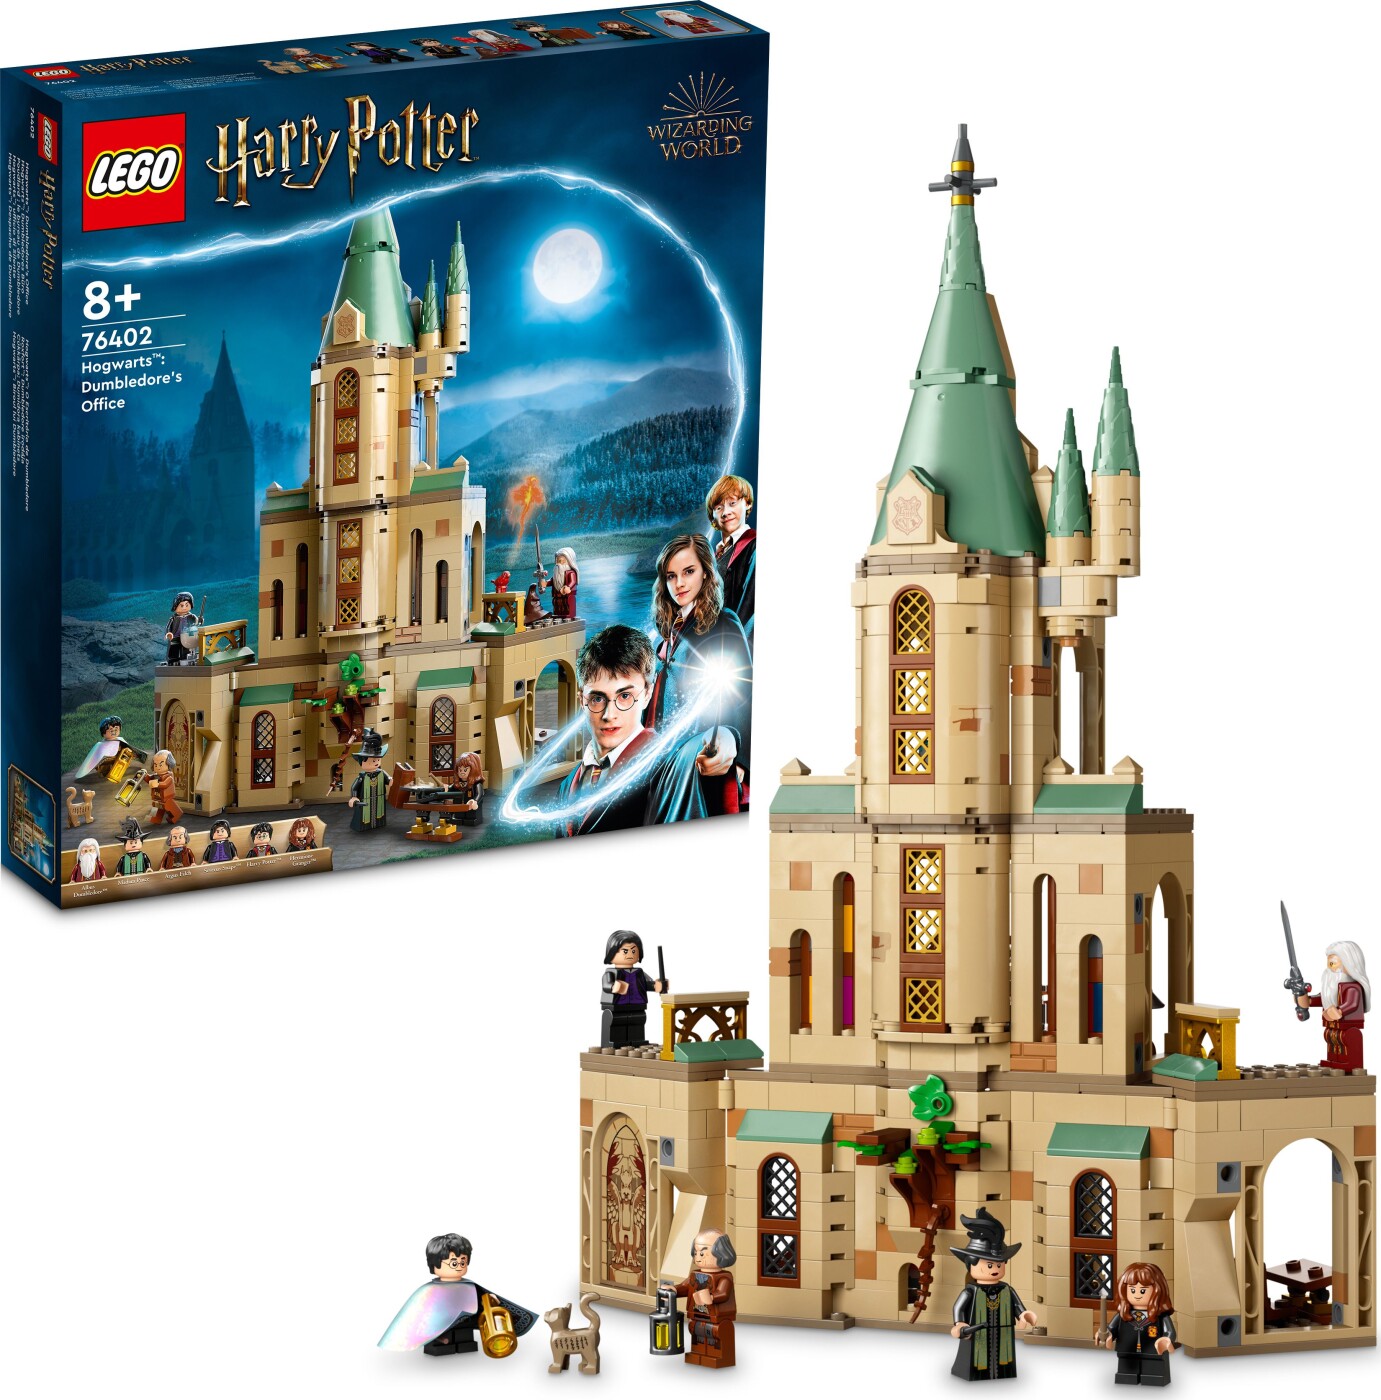 Billede af Lego Harry Potter - Hogwarts - Dumbledores Office - 76402